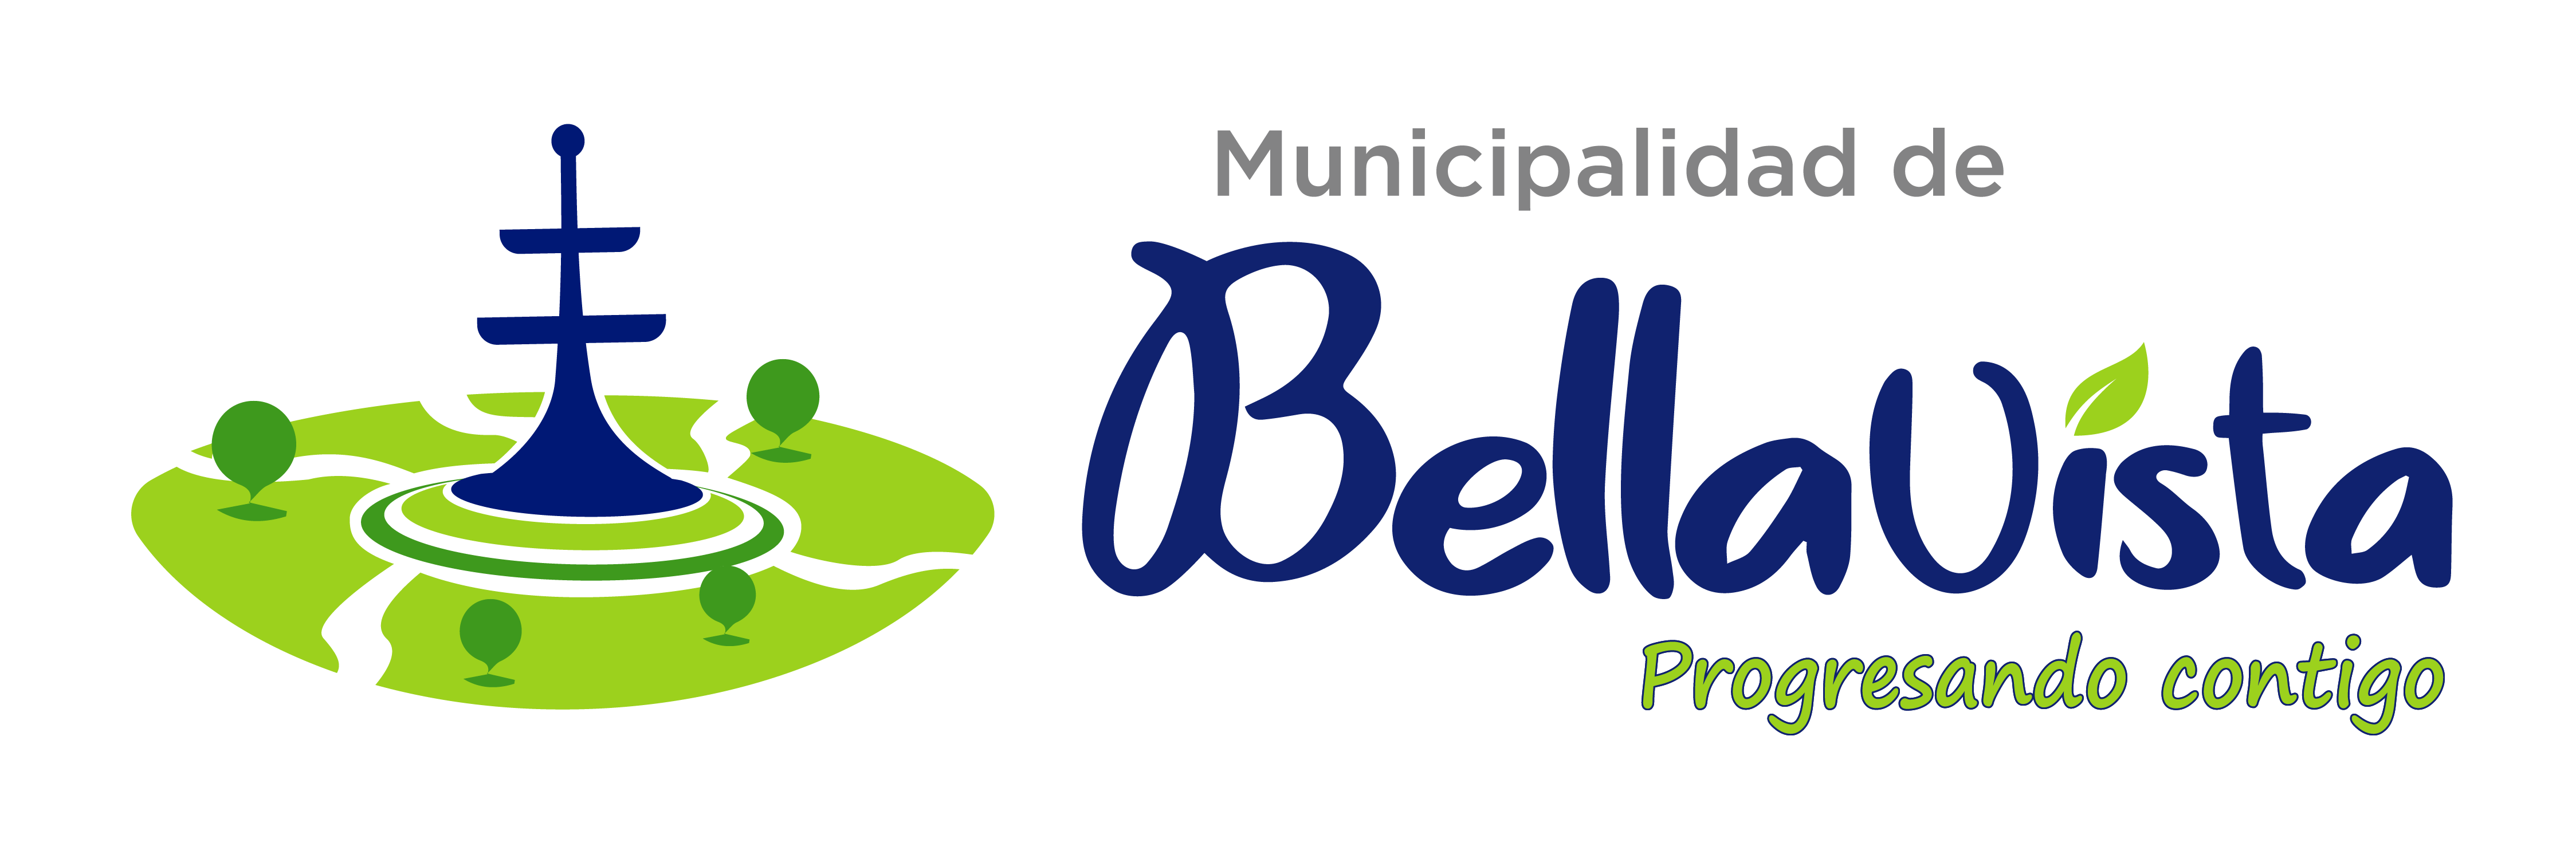 Municipalidad de Bellavista